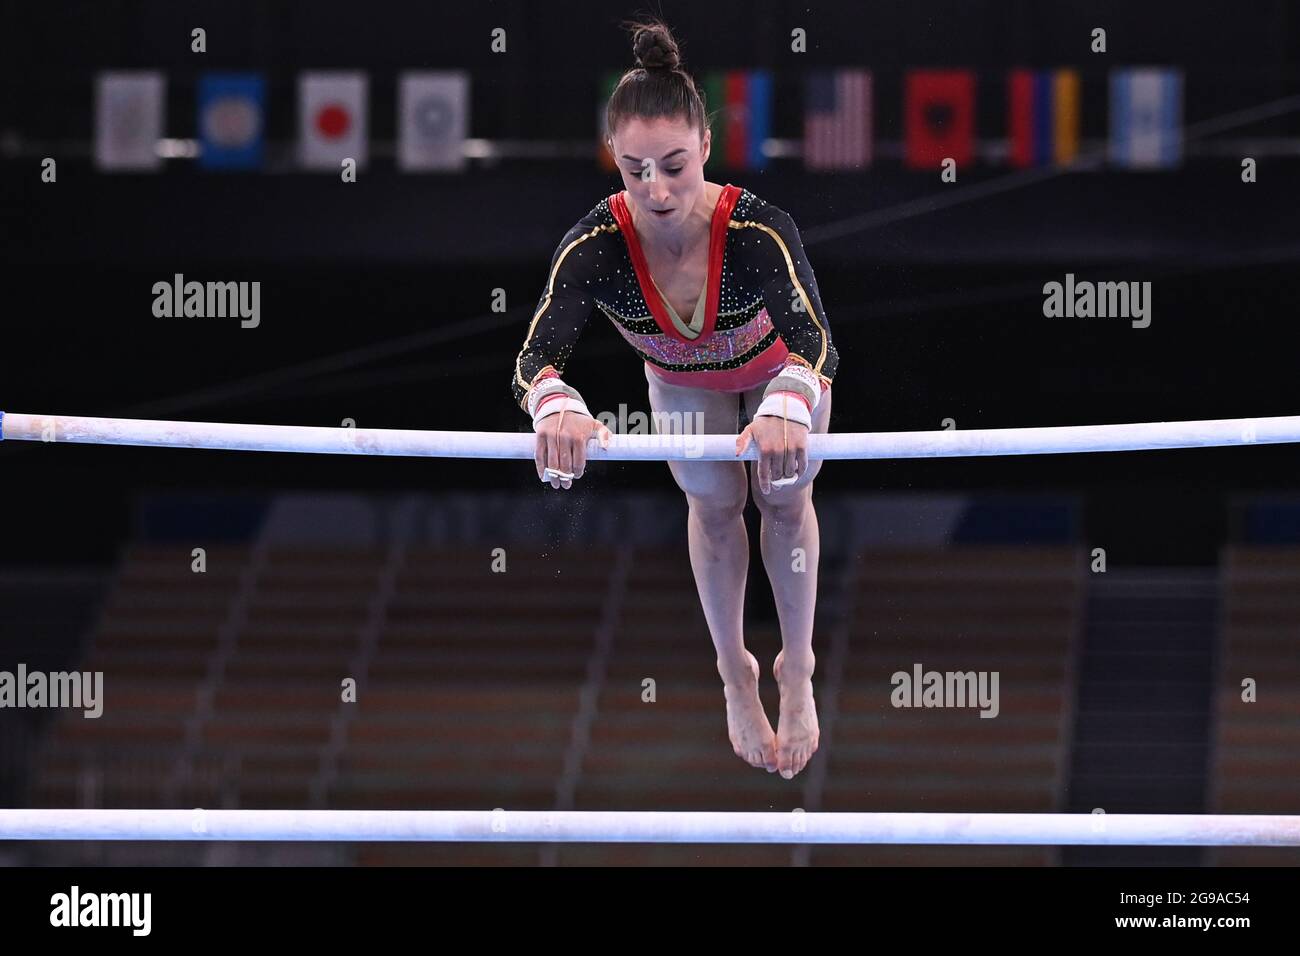 Gymnaste artistique belge Nina Derwael photographié en action pendant le concours de barreaux inégaux féminin aux qualifications de la gymnastique artistique c Banque D'Images